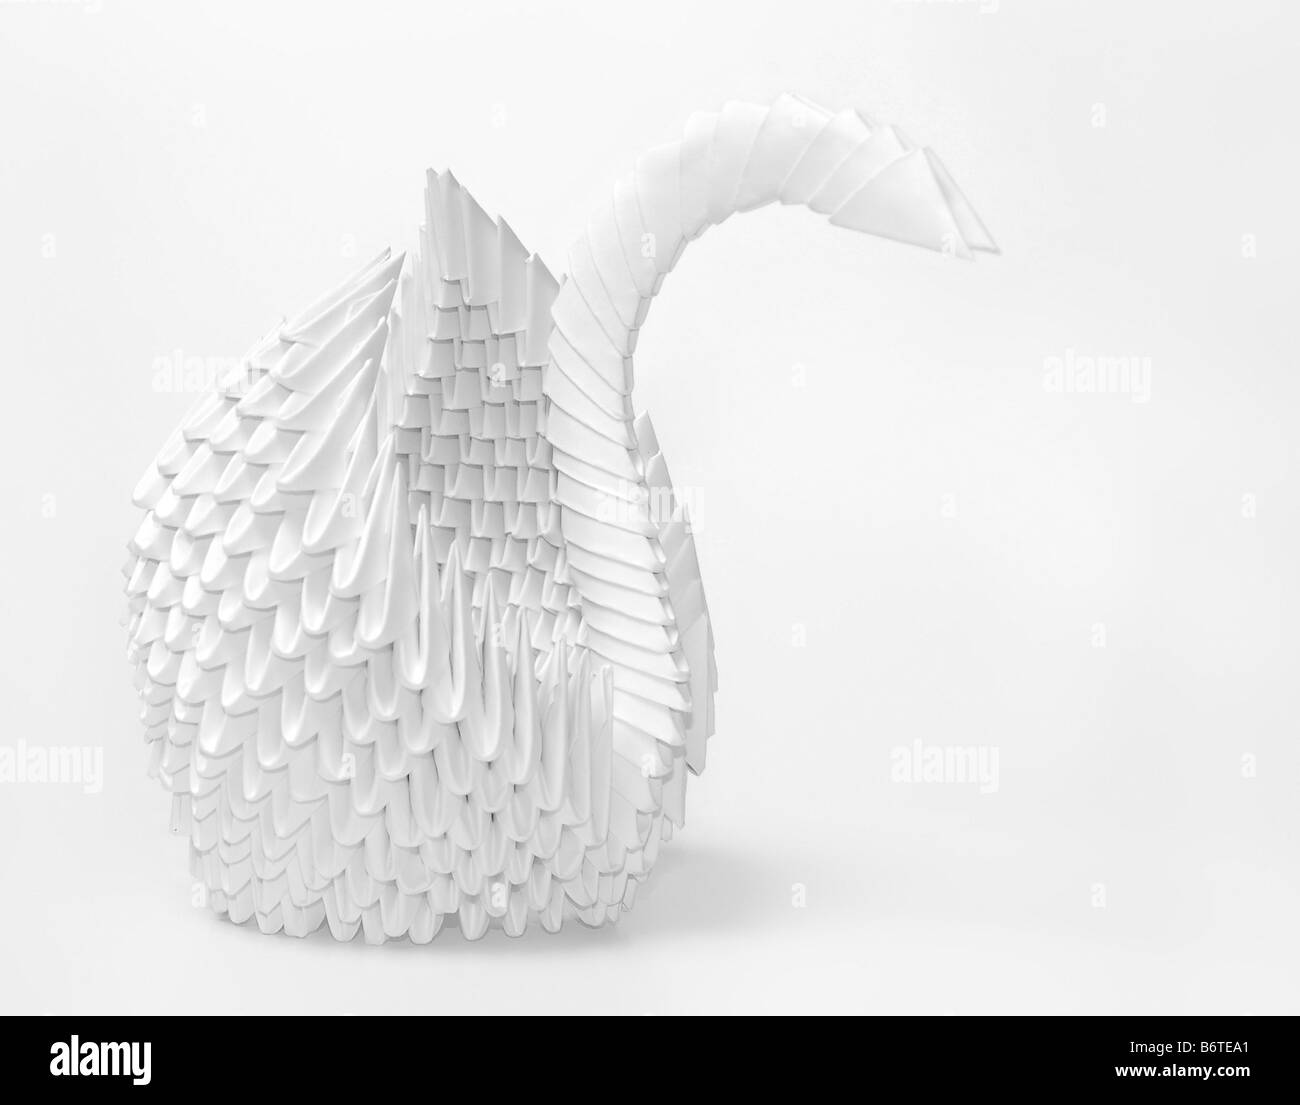 Minimalist tattoo boho origami paper duck line art